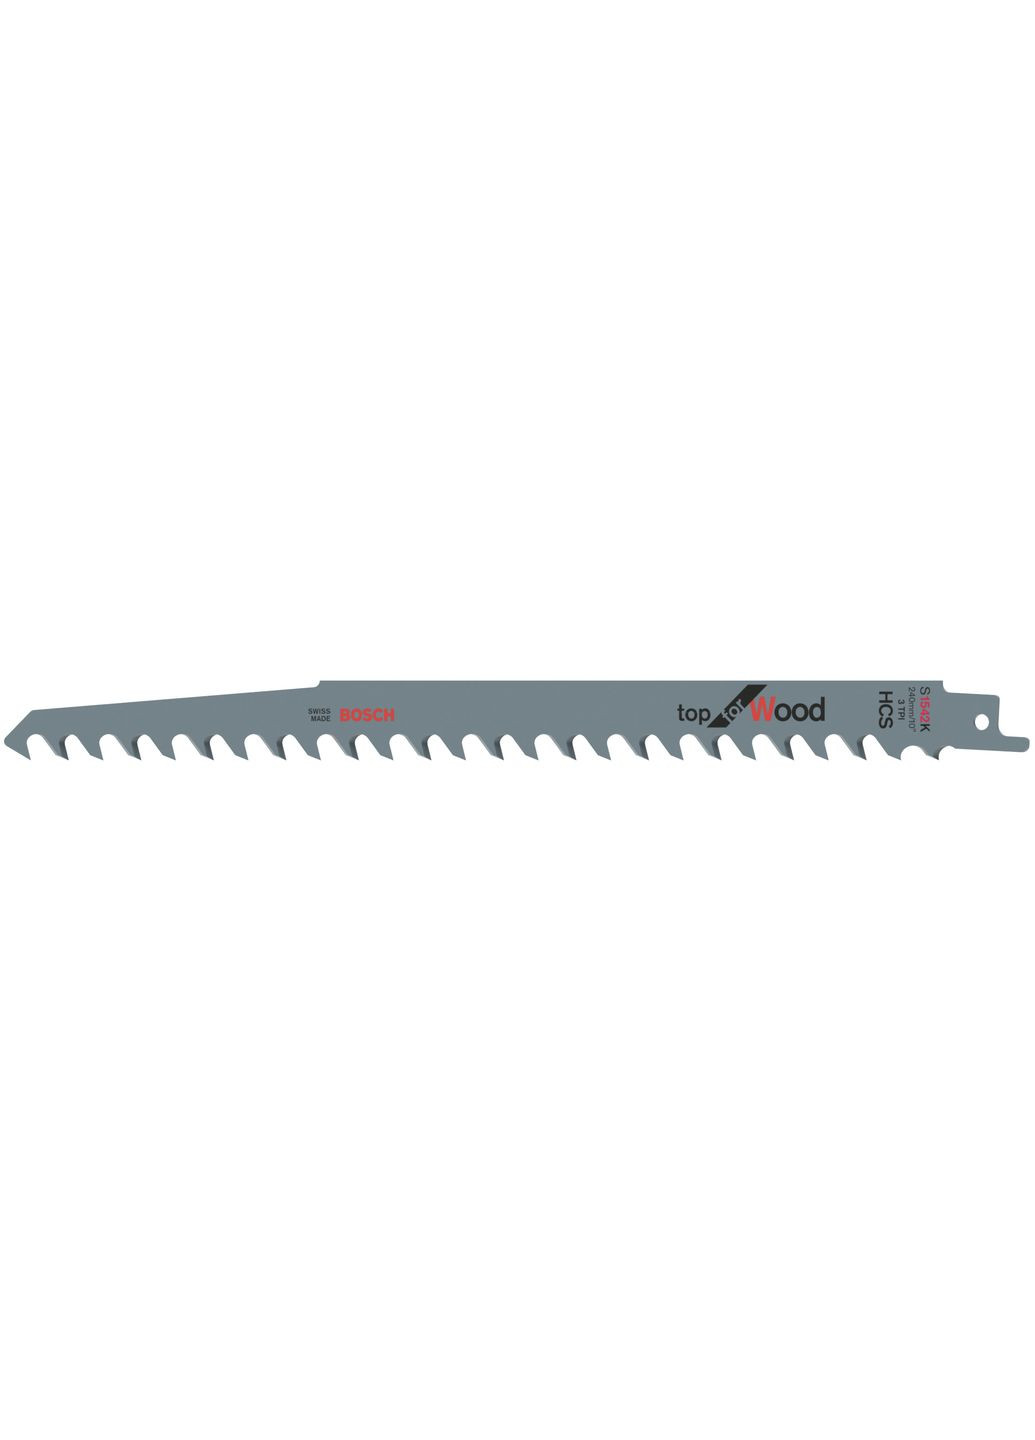 Пильное полотно HCS 2608650681 (S1542K, 240 мм) шабельное для ножовки (23379) Bosch (290253160)